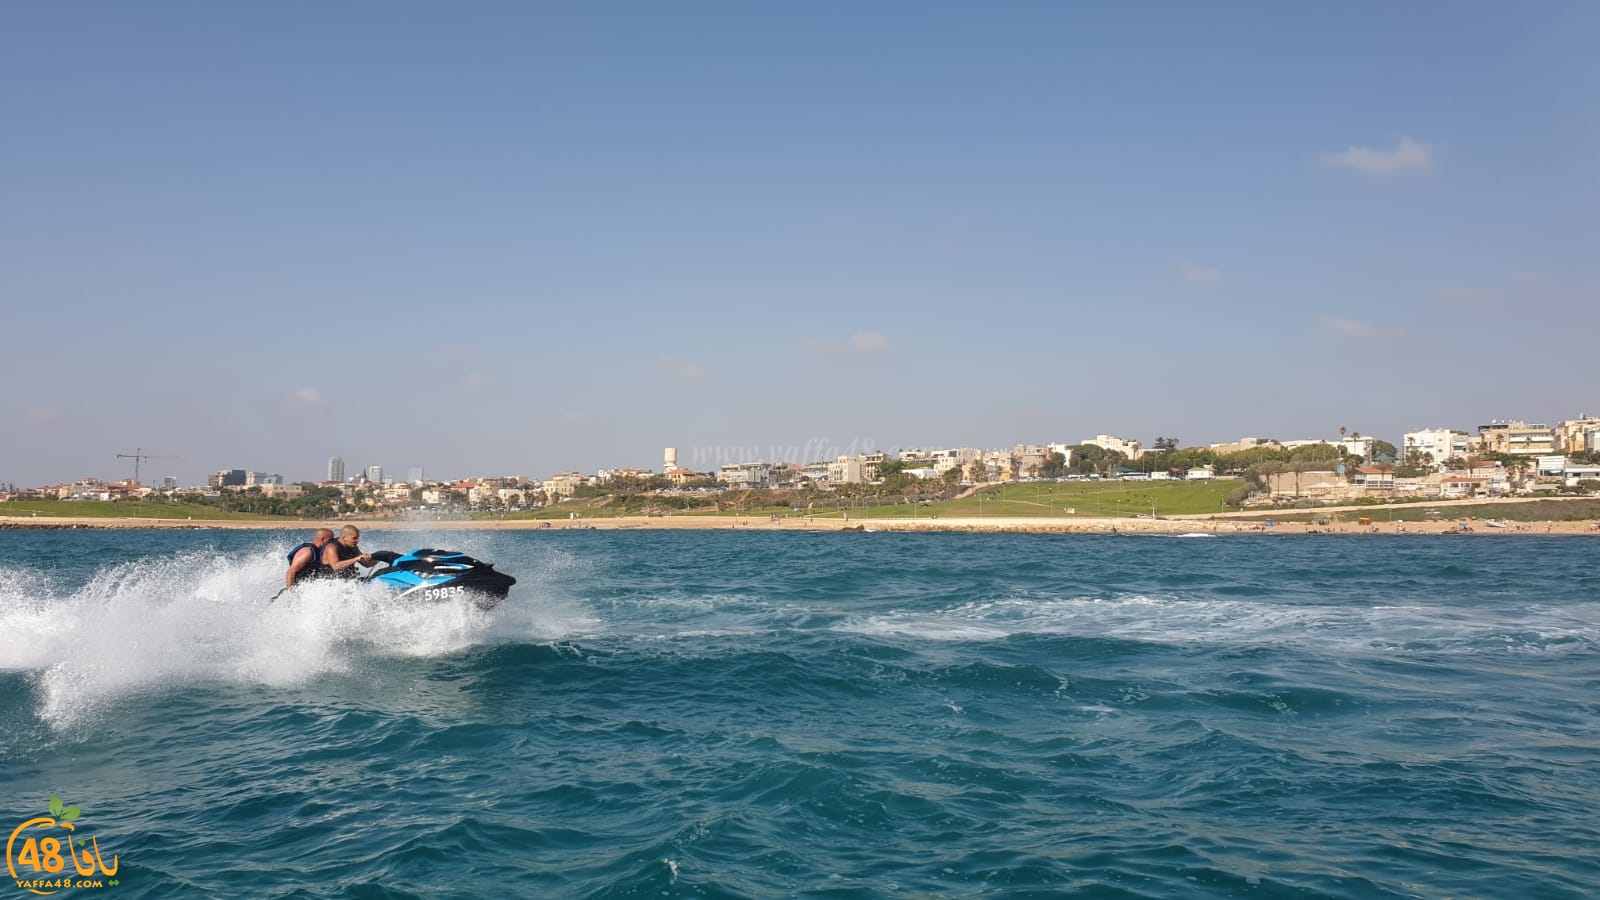  فيديو: رياضة الجيت سكي المائية تحظى باهتمام واسع لدى شباب مدينة يافا